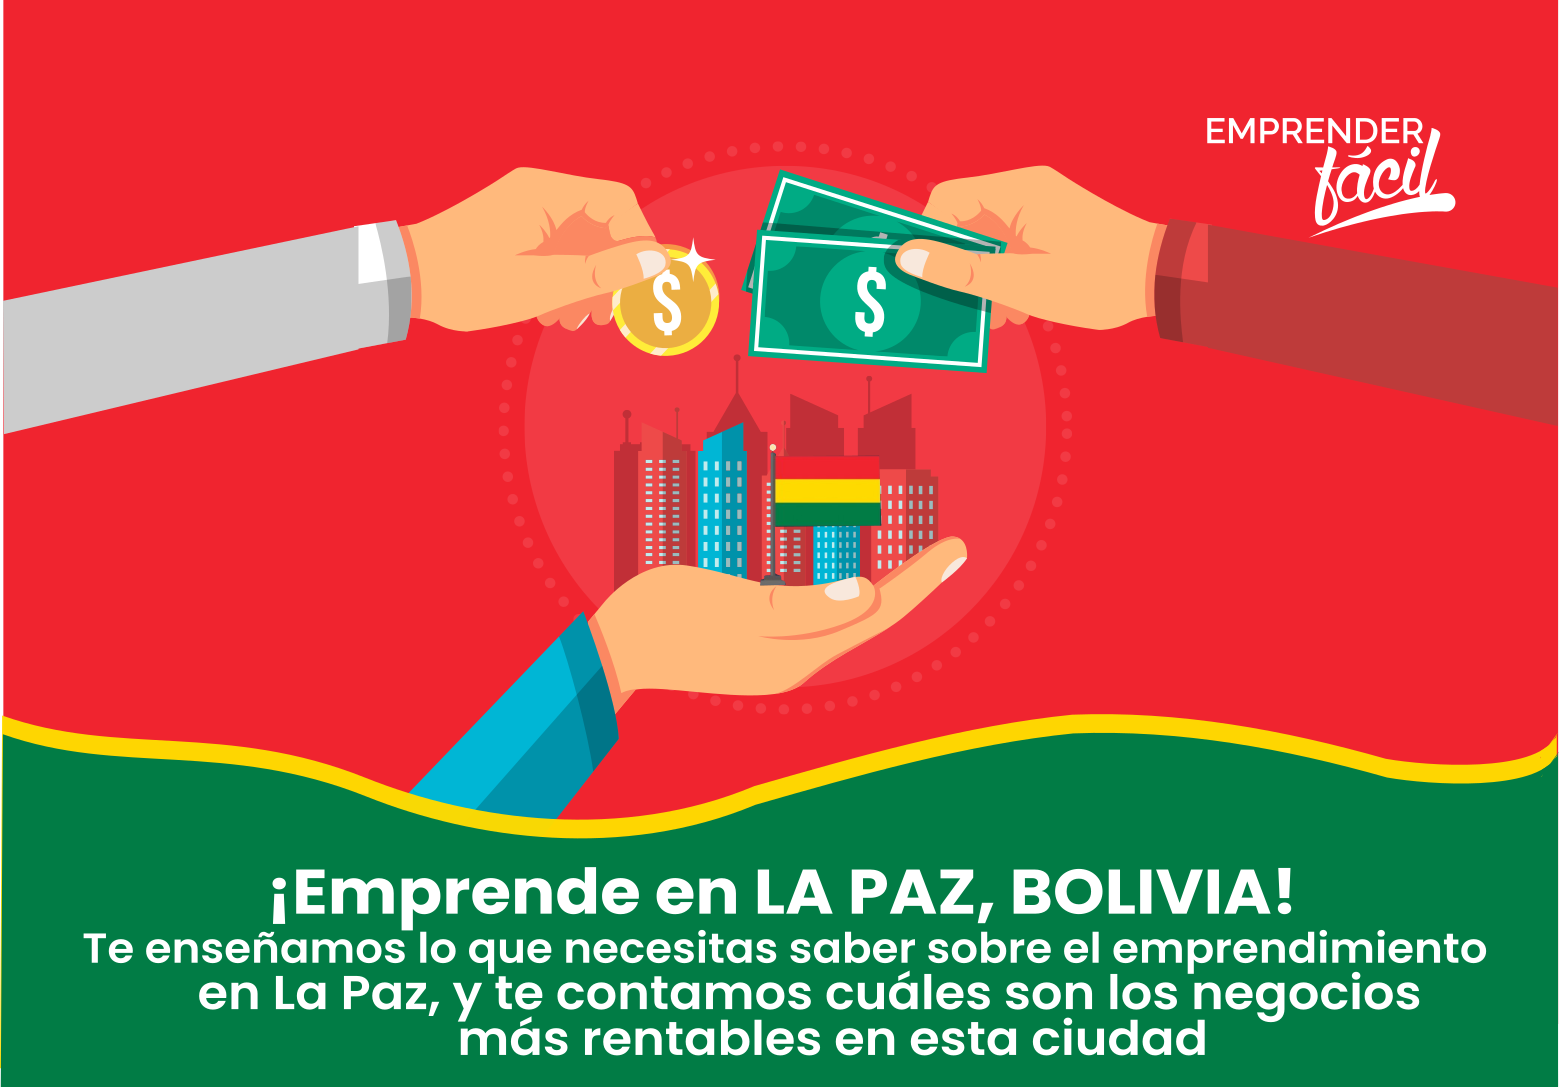 Negocios Rentables en La Paz, Bolivia ¡Garantizados!